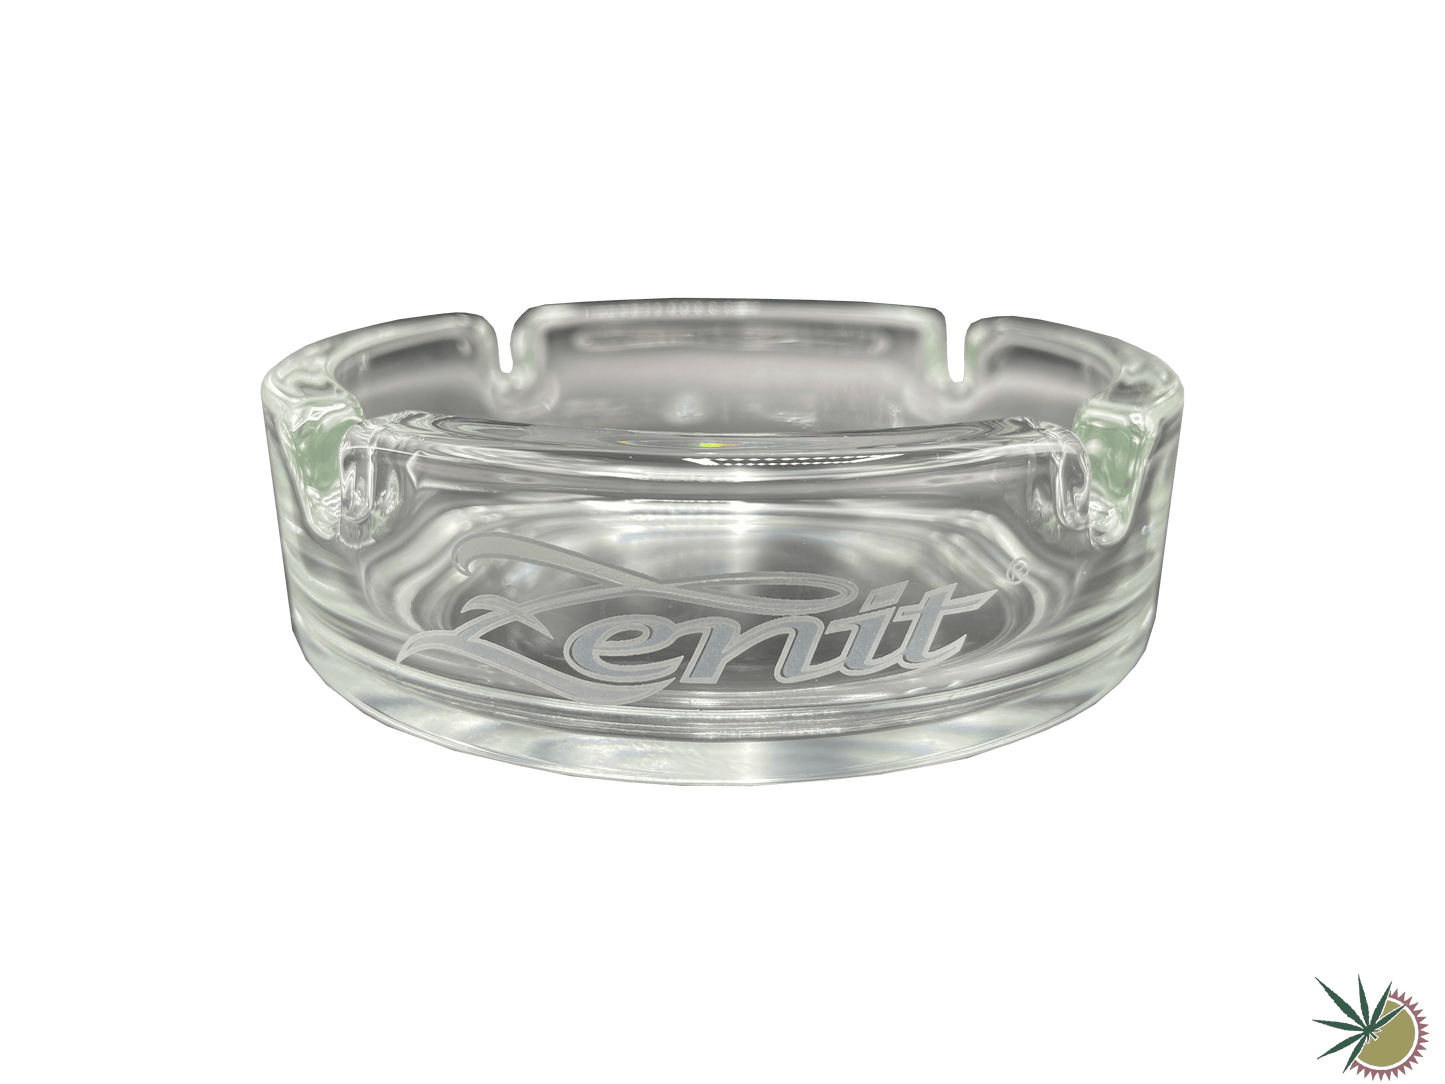 Zenit Aschenbecher Ø10.5cm aus Glas mit sandgestrahltem Zenit-Logo - THC Headshop